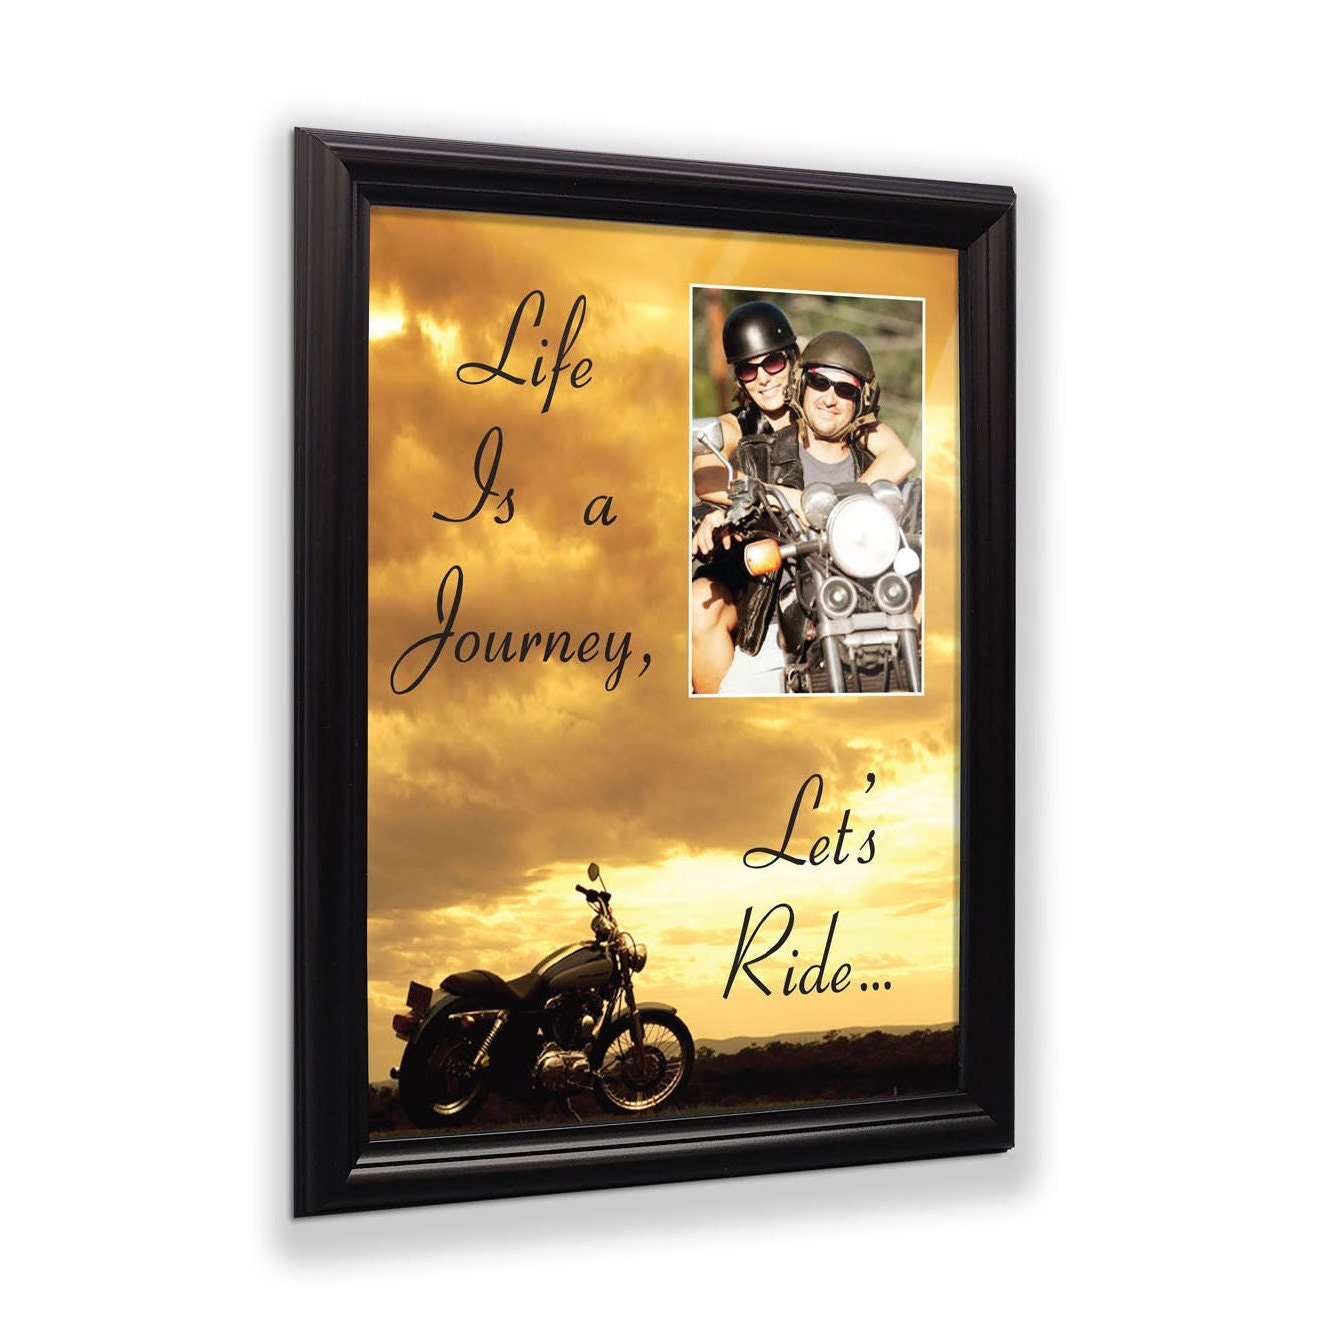 Marco de fotos clásico de Harley, regalos de Harley Davidson para hombres,  regalos de Harley Davidson para mujeres, regalos de boda de Harley